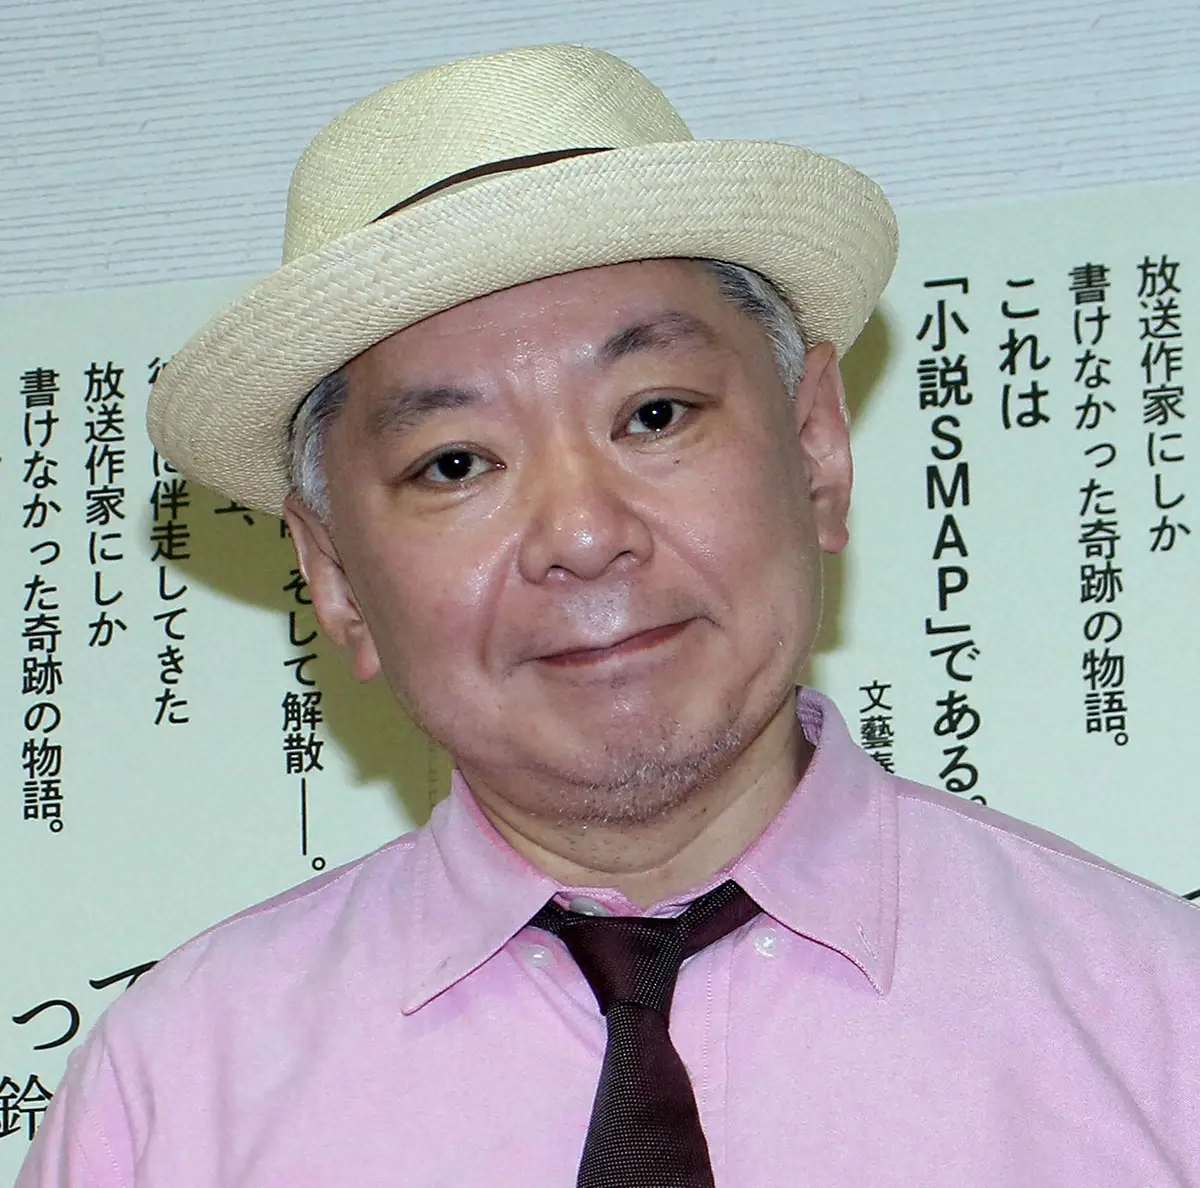 鈴木おさむ氏「ストーカーに対する法律がアップデートされないと同じことが」新宿タワマン女性刺殺事件に